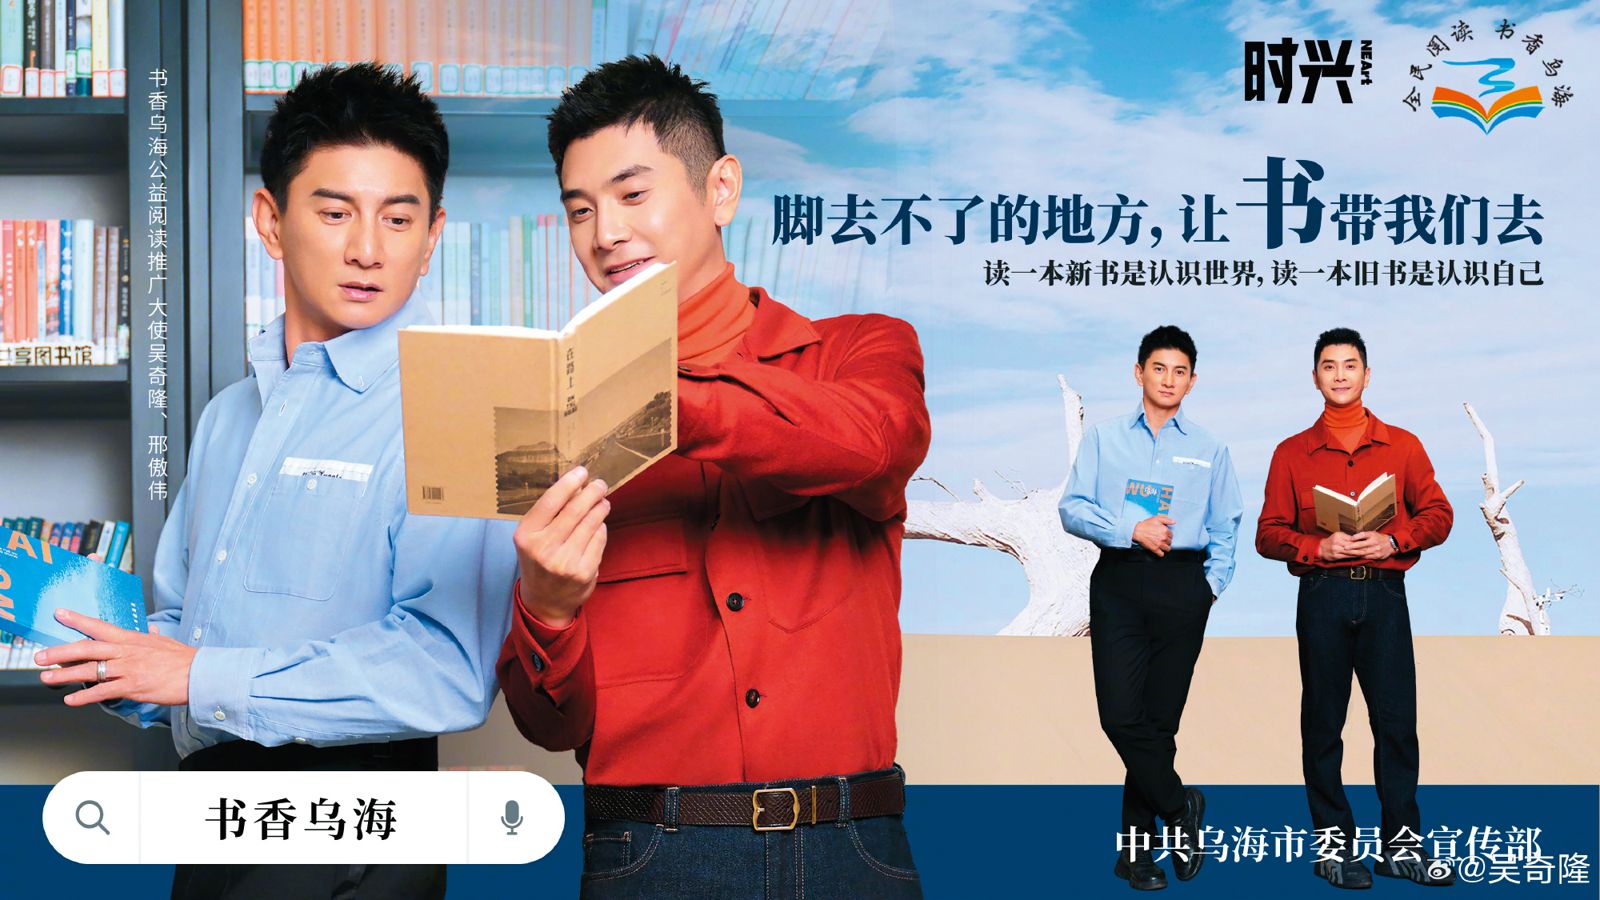 吳奇隆（左）在中國大陸的工作風生水起，但他曾在節目分享：「我這幾年刻意地把表演工作減少，花時間回家陪小朋友，適當地、慢慢地調整自己。」（翻攝自吳奇隆微博）